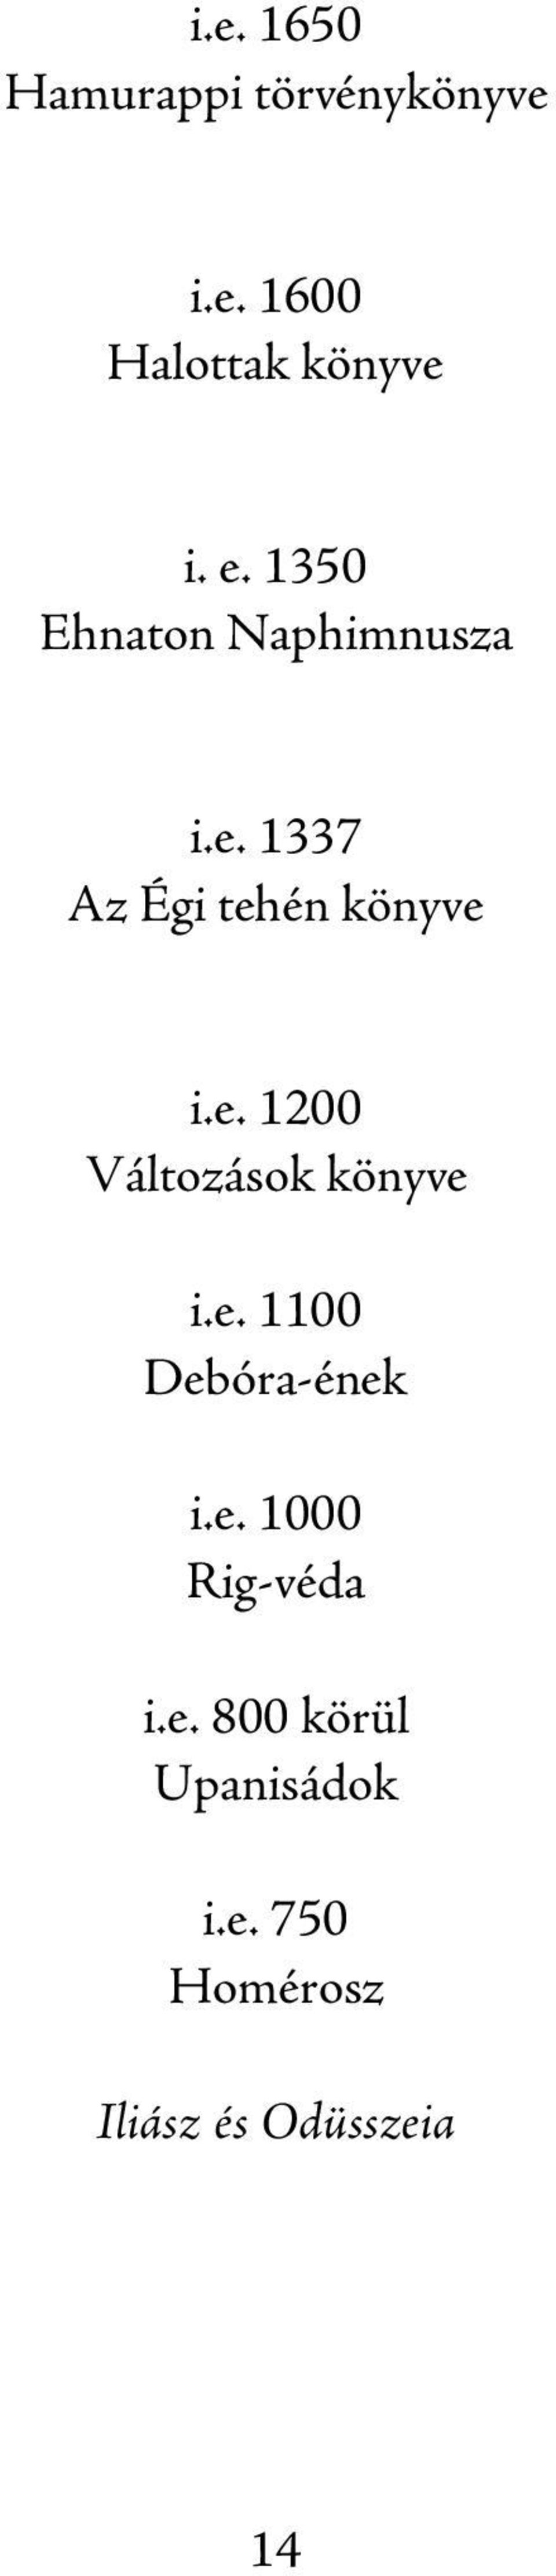 e. 1100 Debóra-ének i.e. 1000 Rig-véda i.e. 800 körül Upanisádok i.